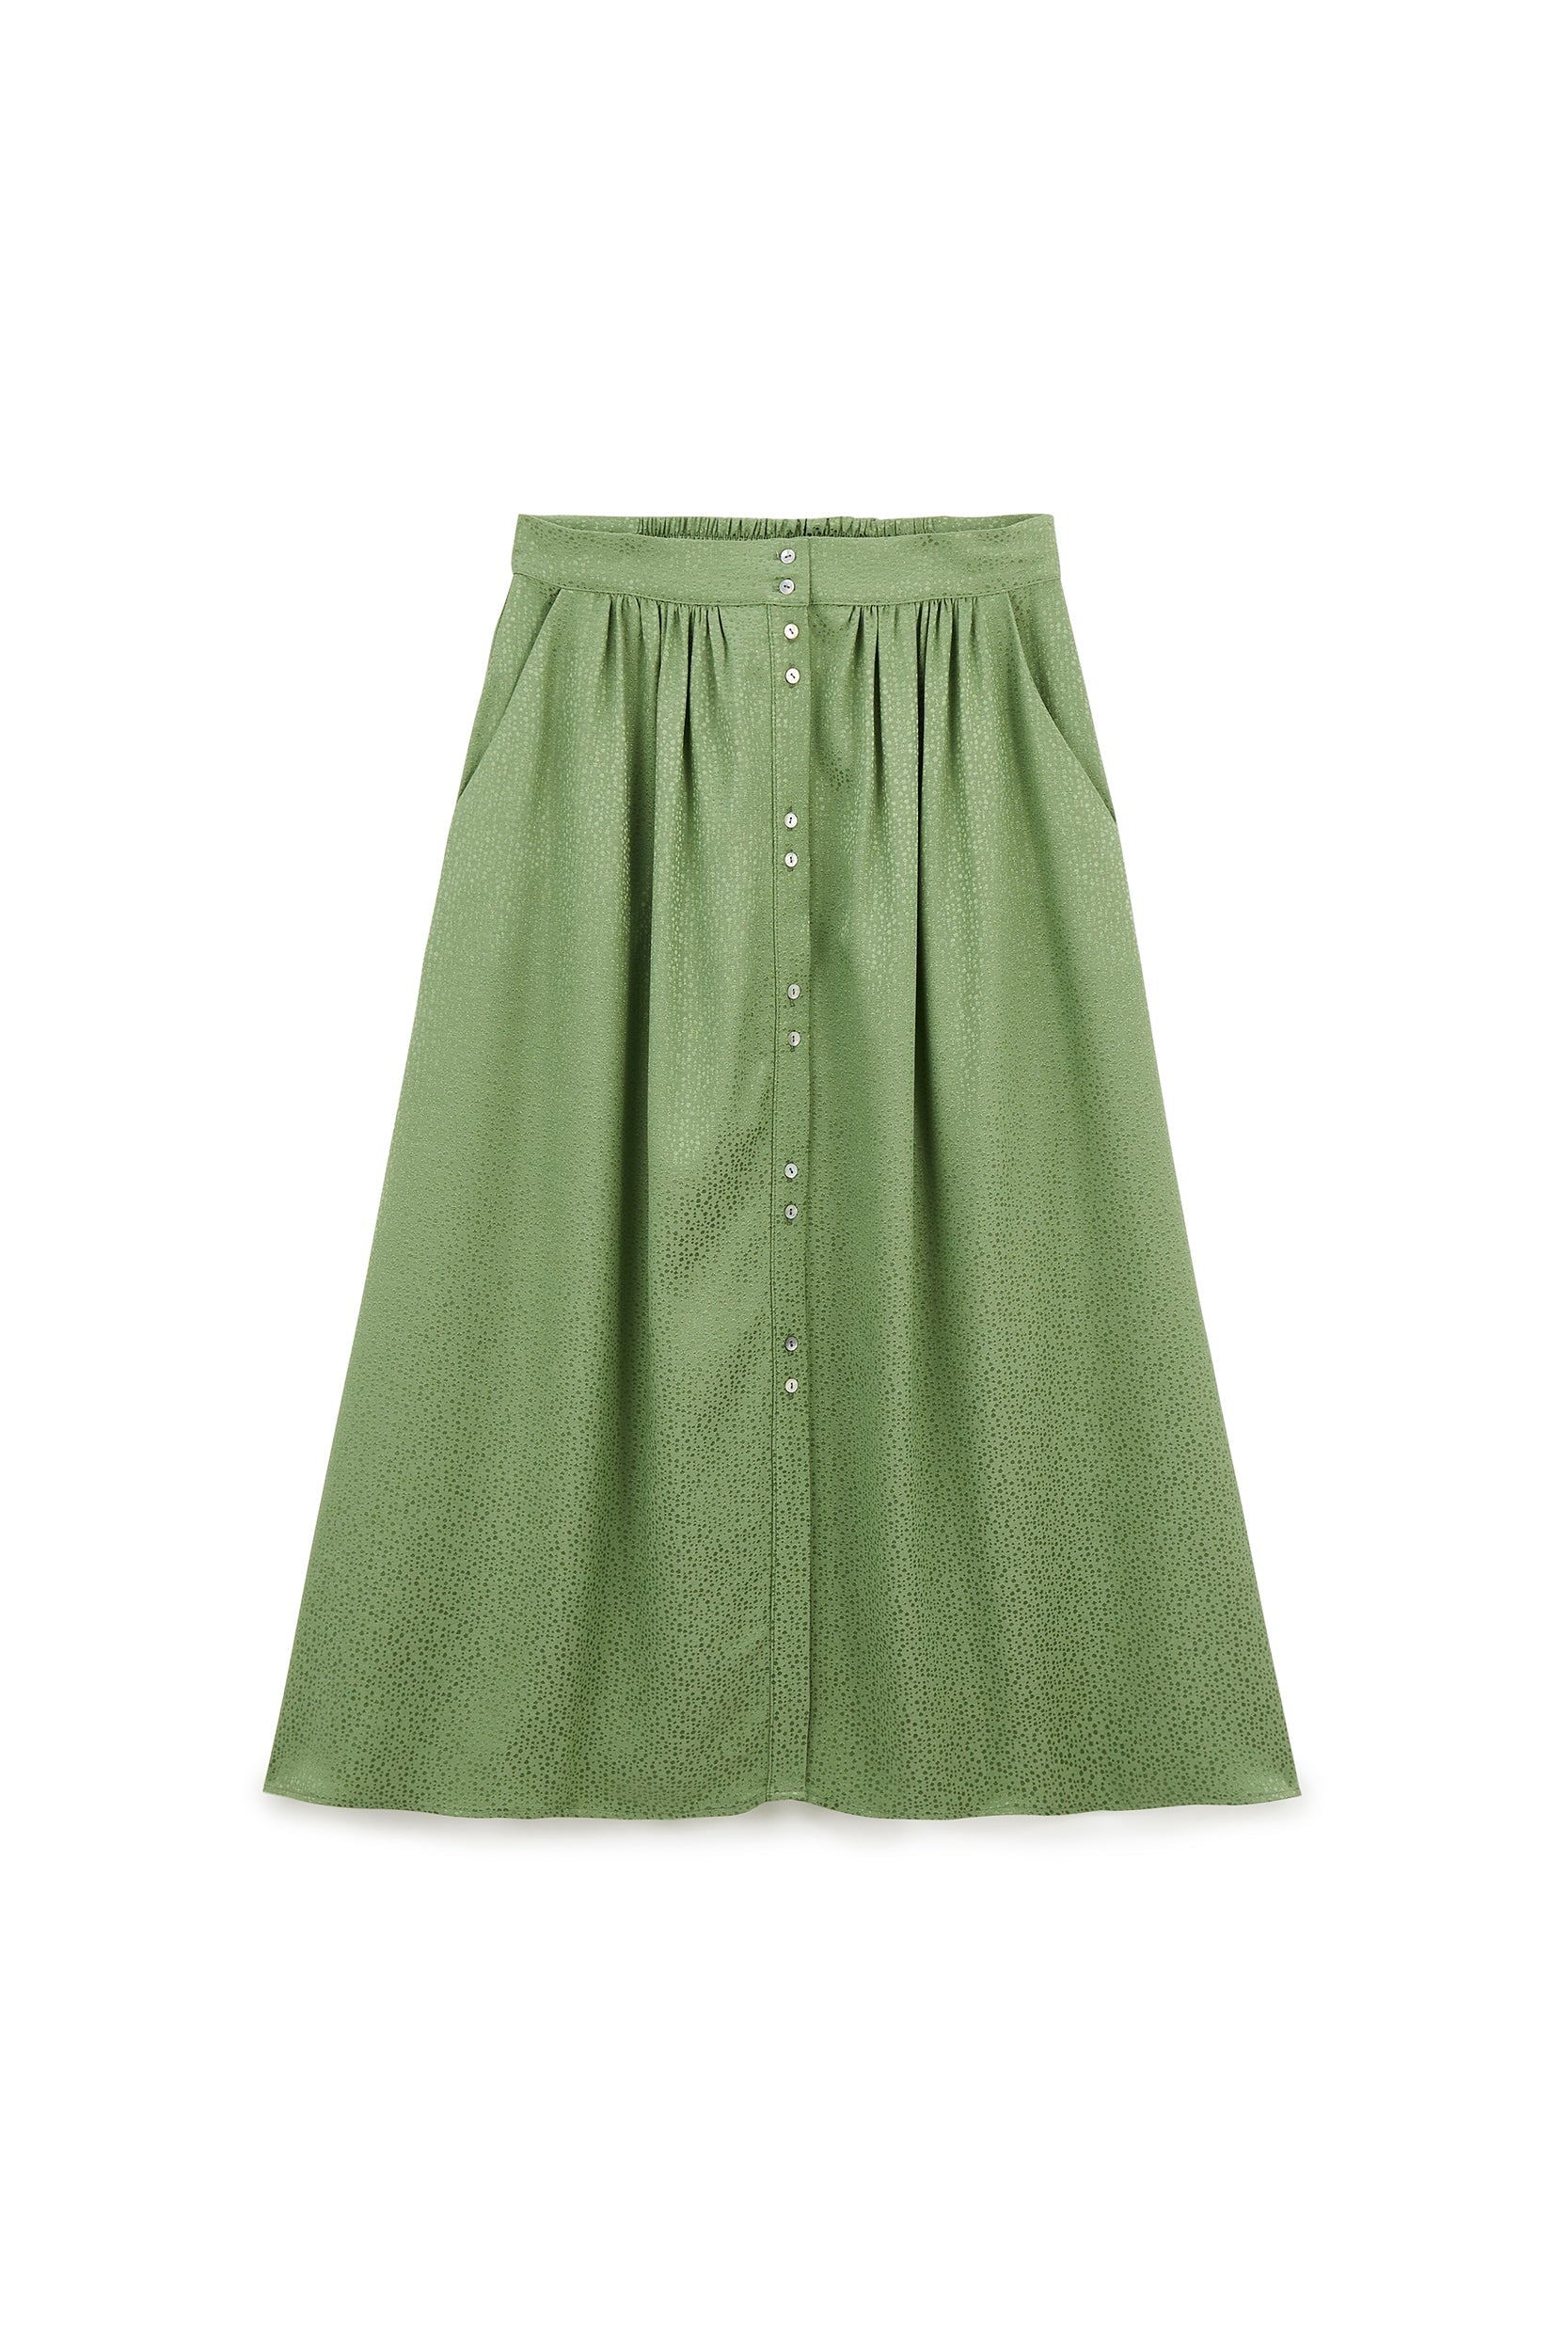 Sally sage green skirt